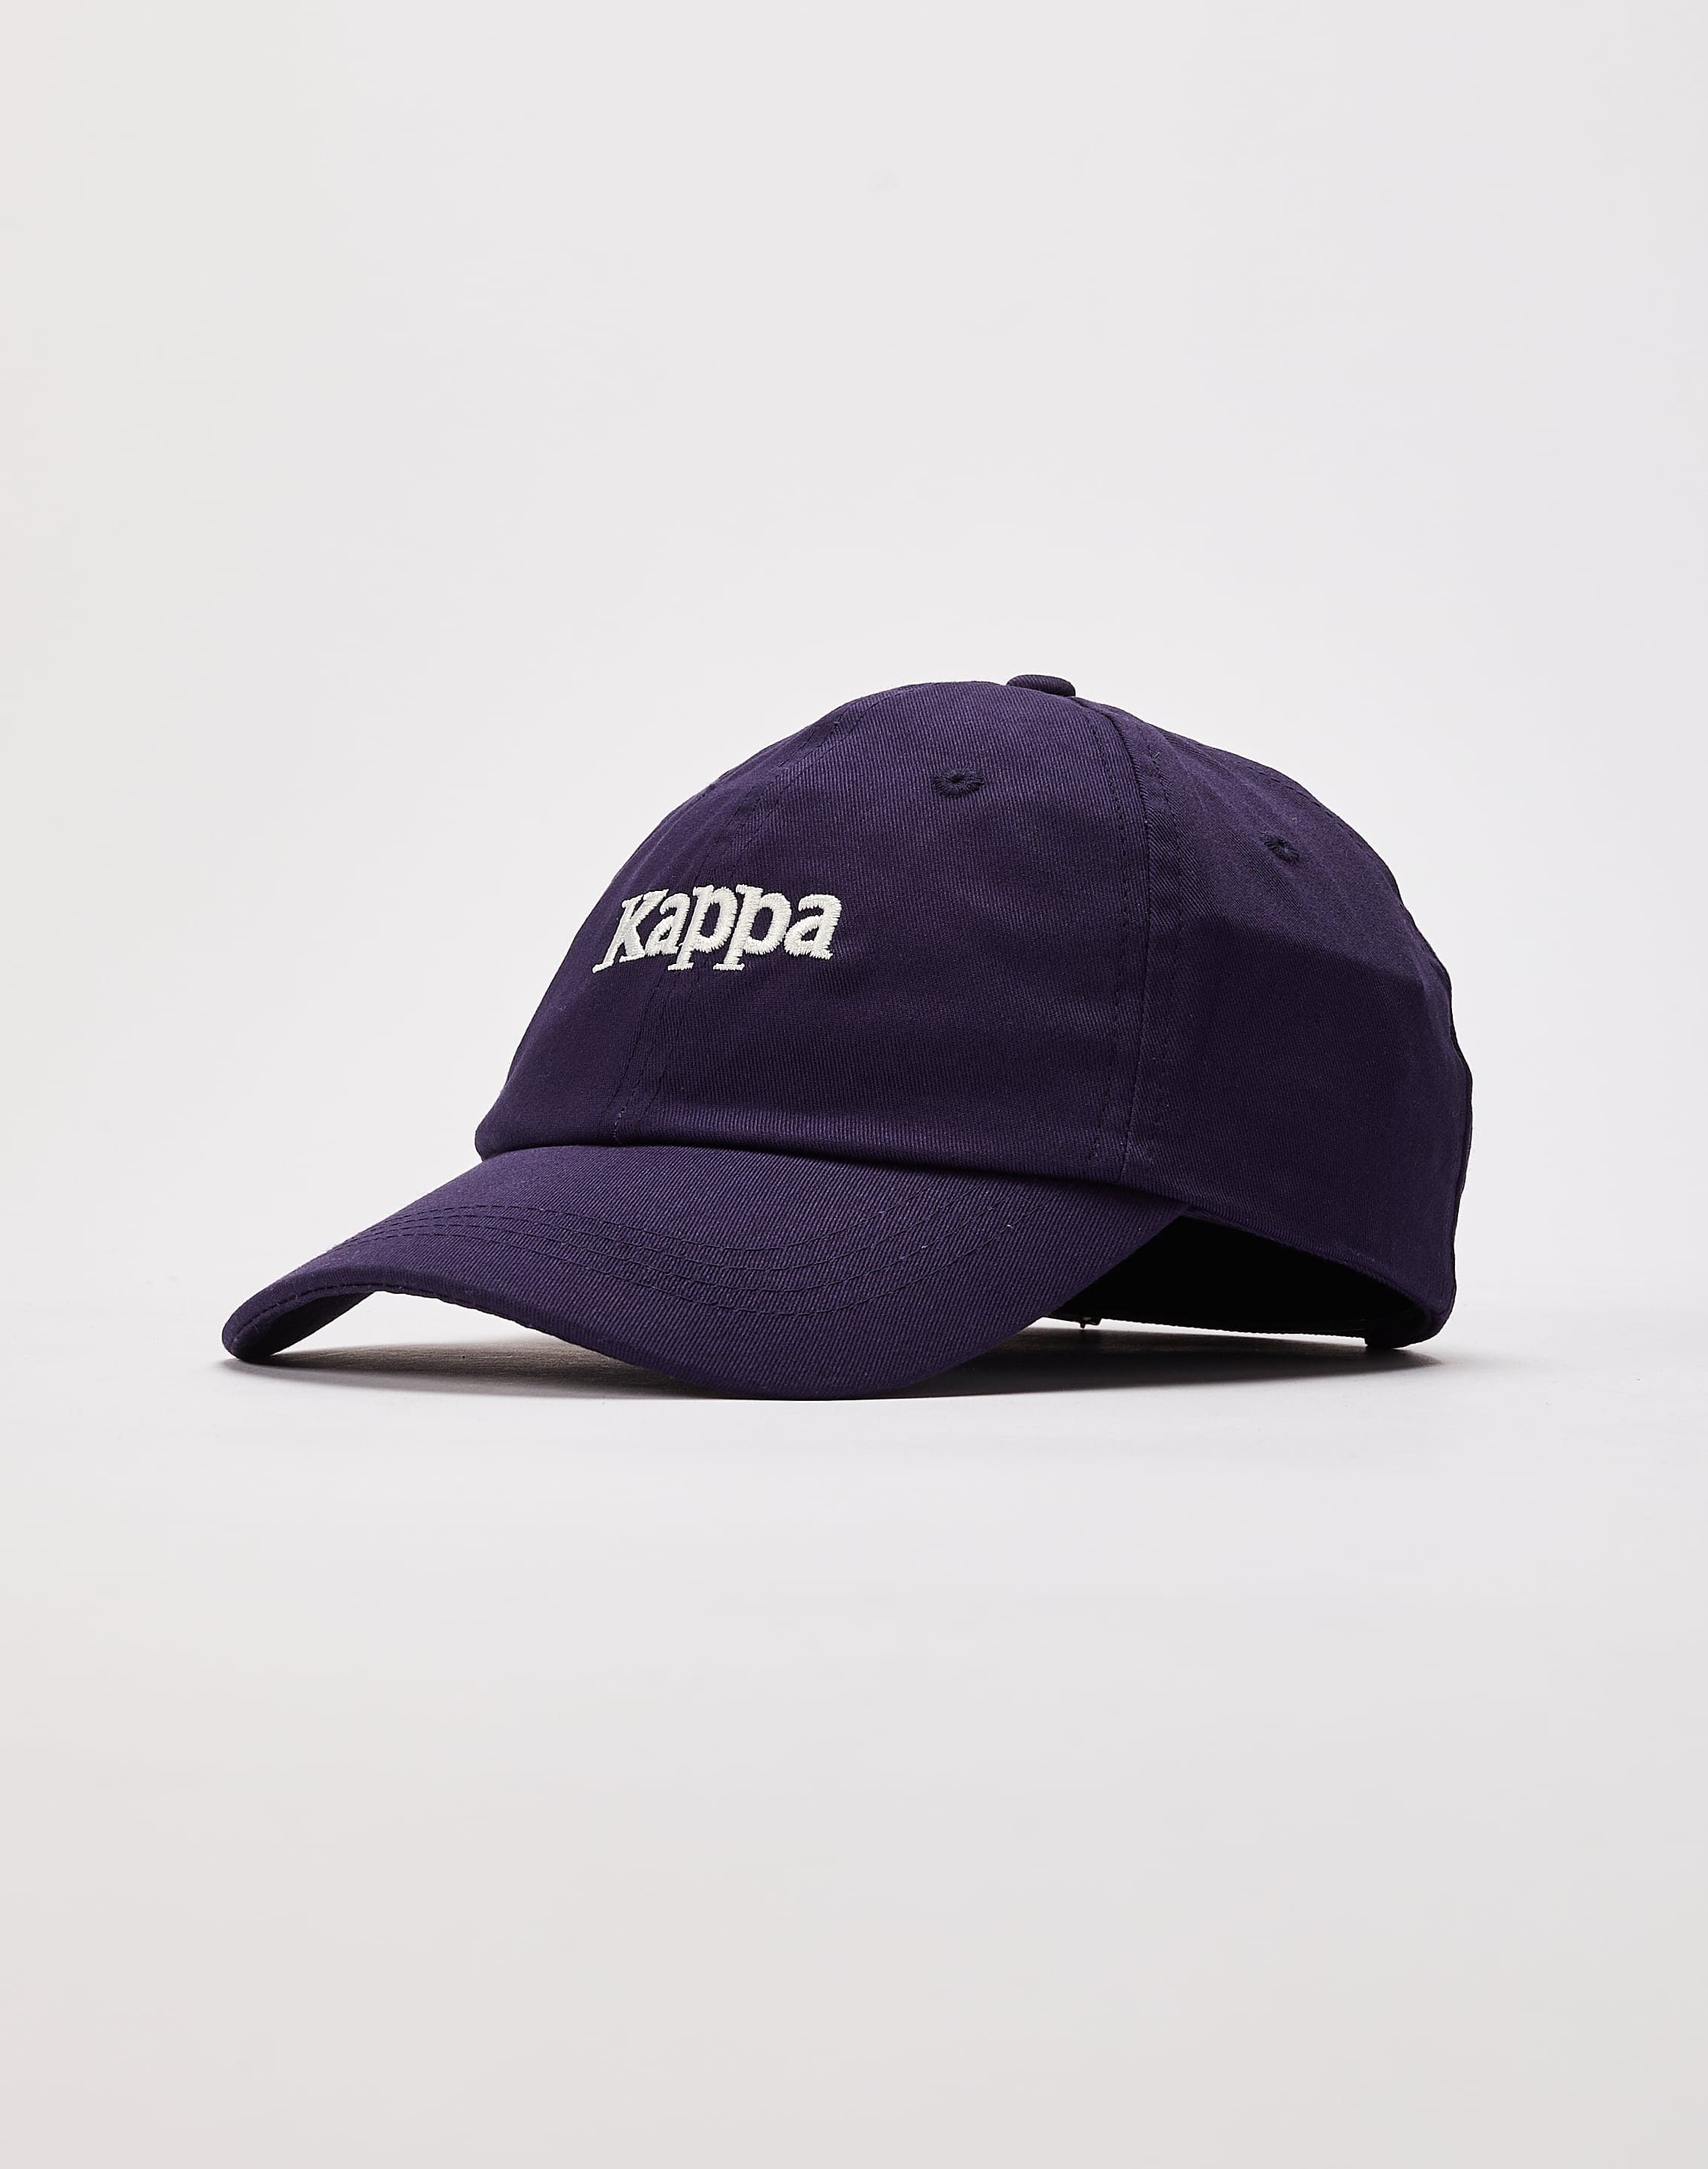 Kappa Authentic Hoogeveen Dad – DTLR Hat